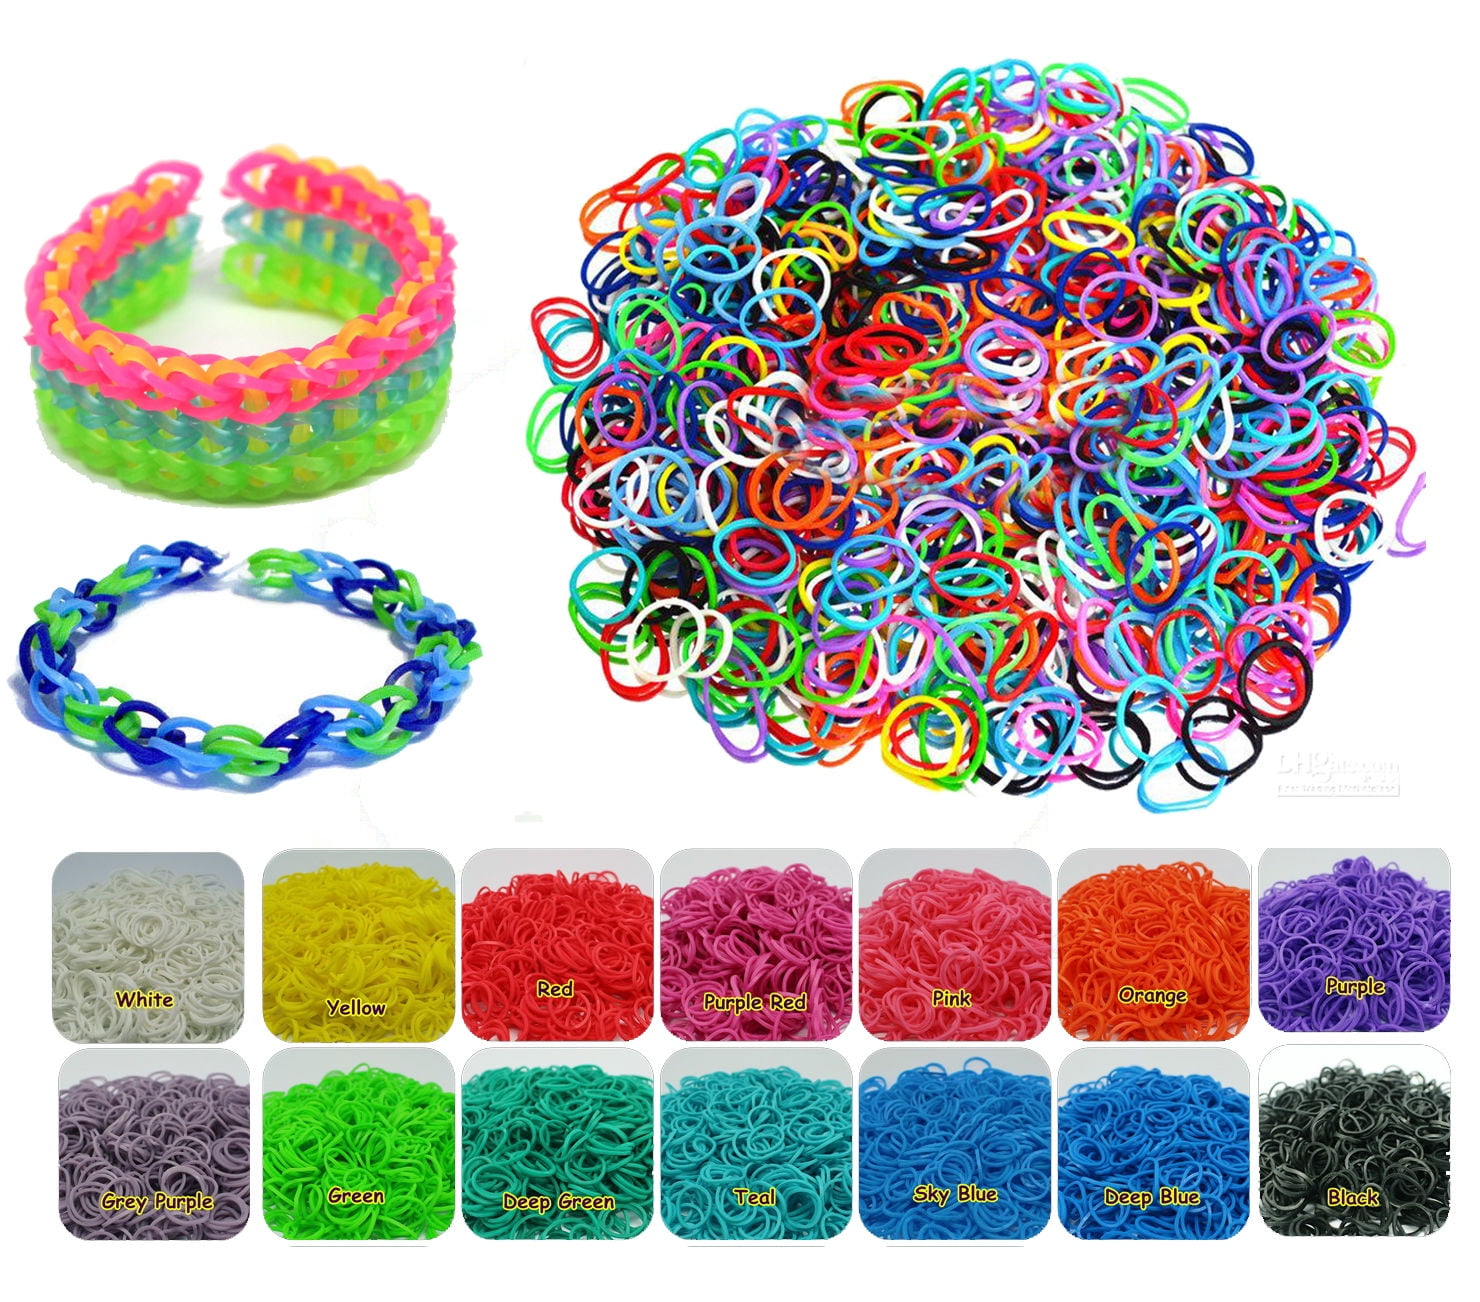 Colorful Loom Bands Set 600/Candy Color Greek Bracelets Making Kit